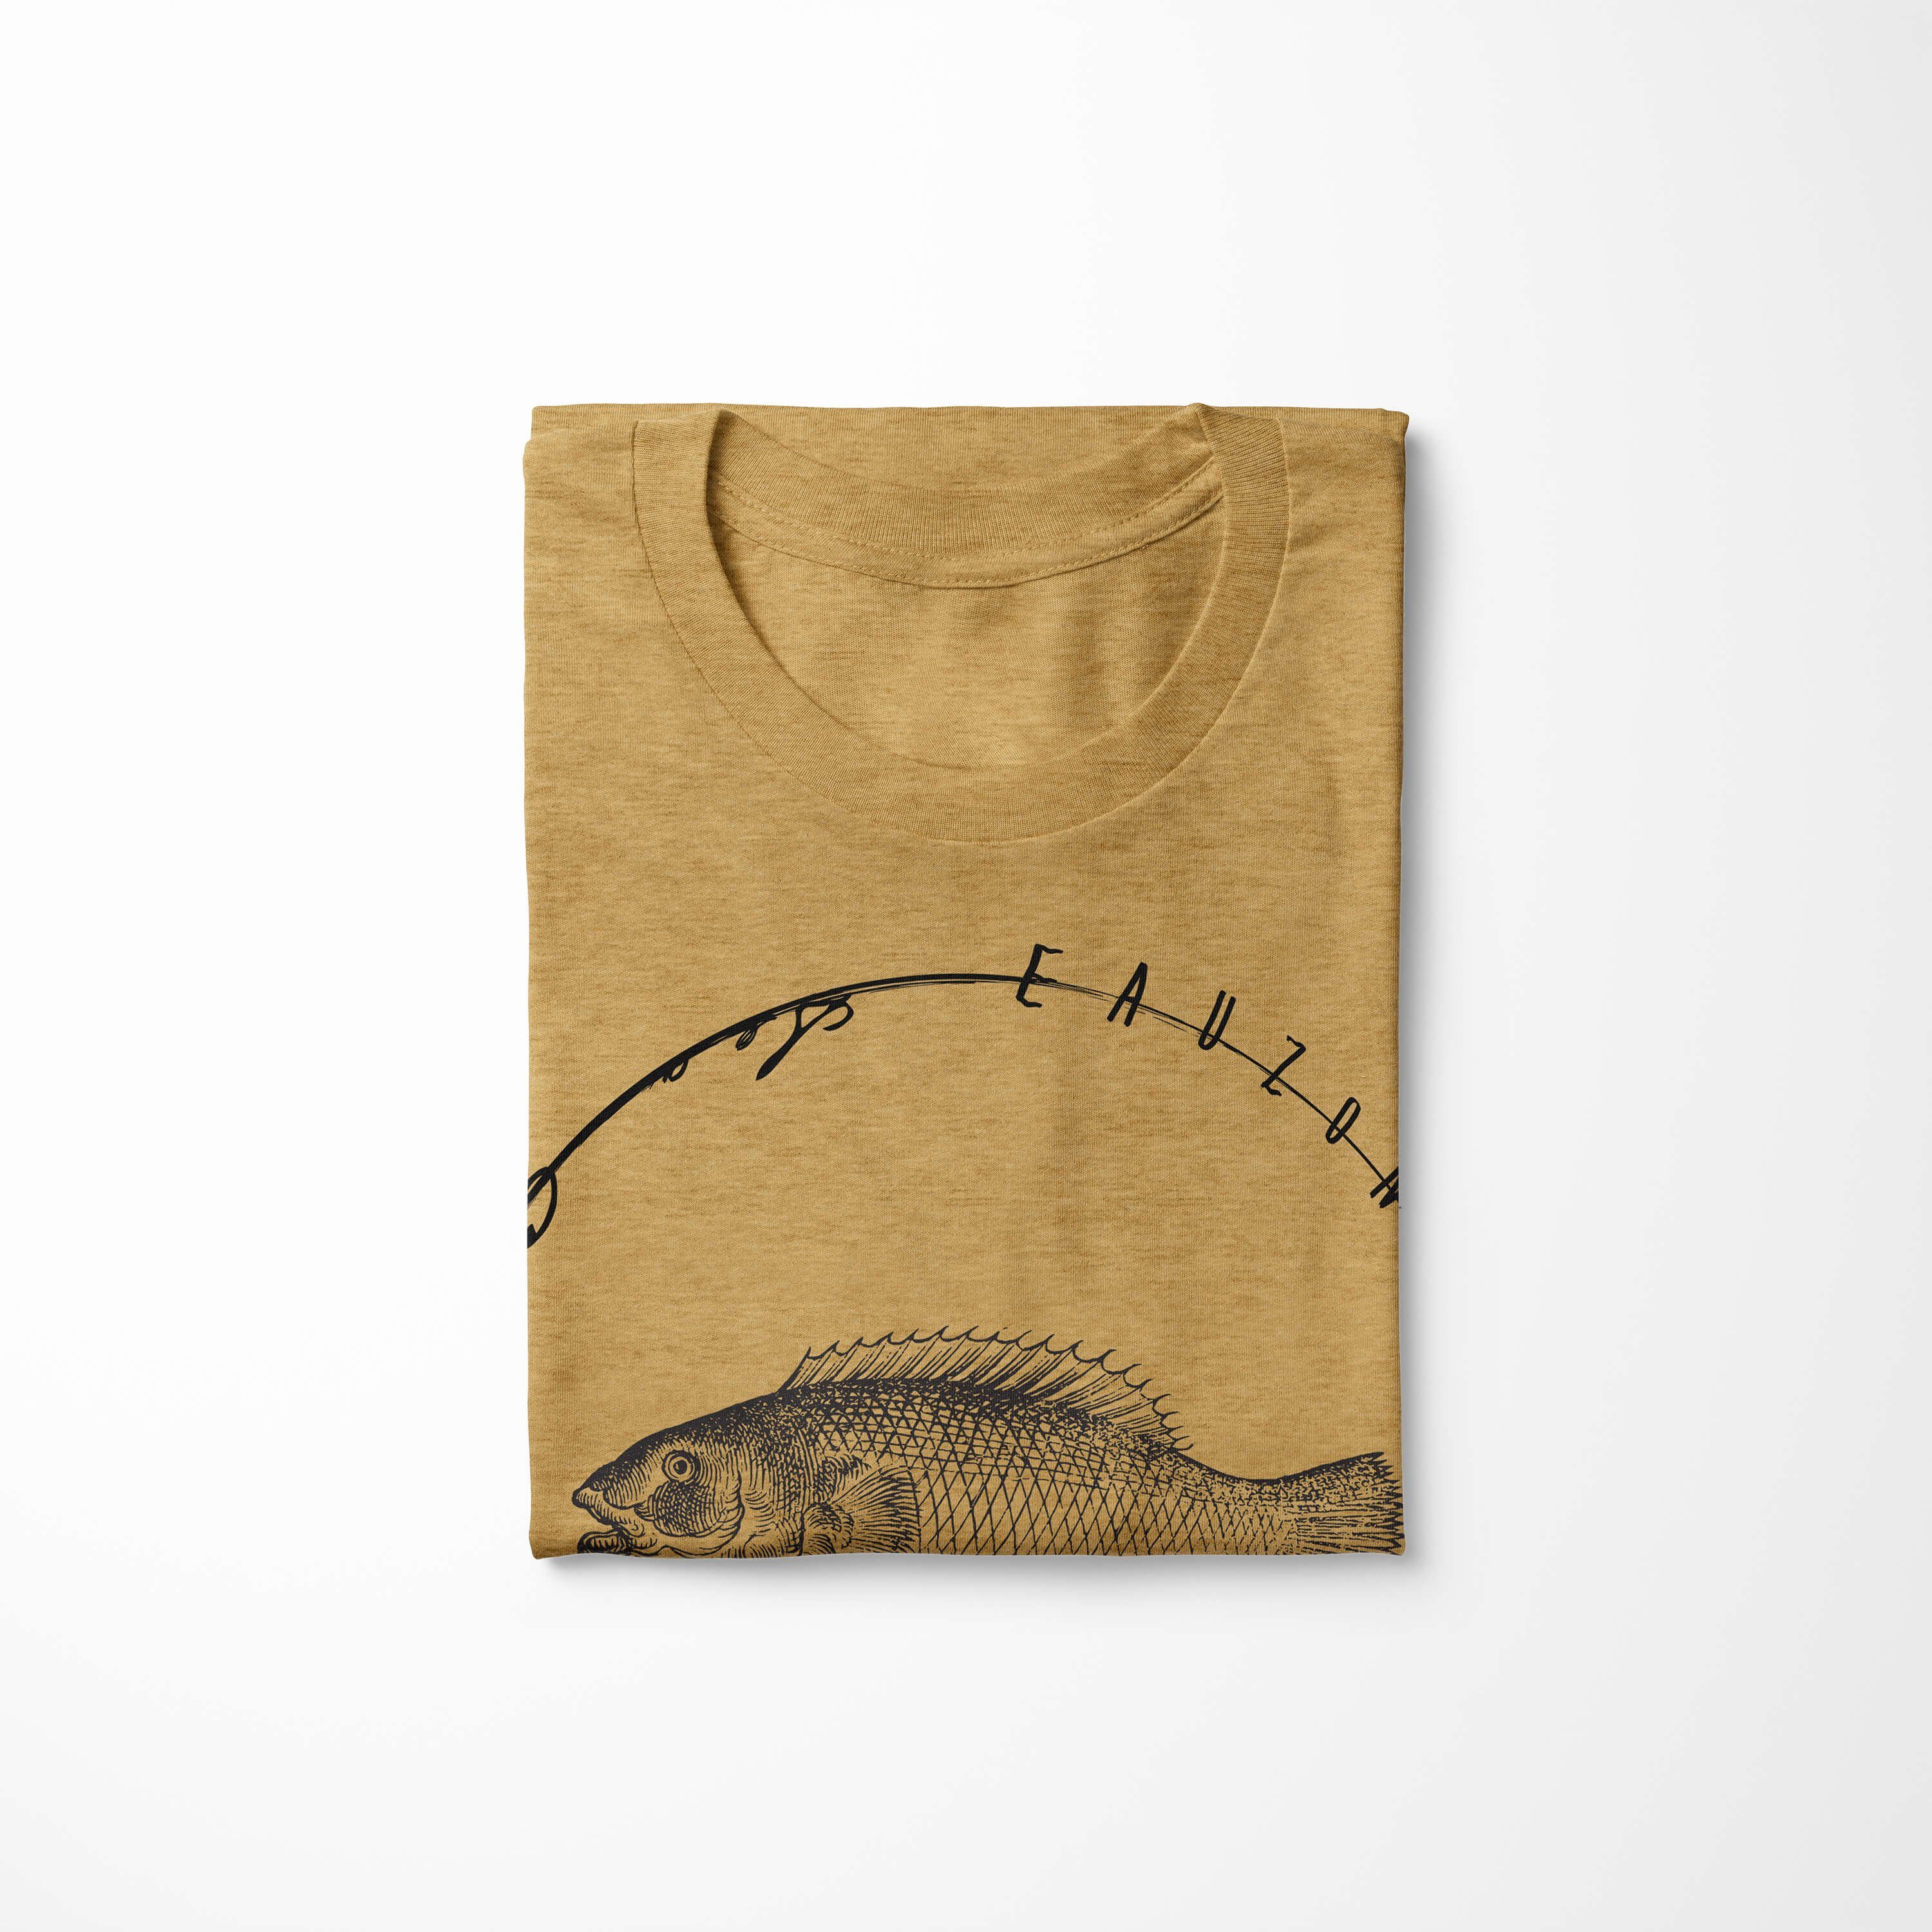 Sea - Serie: sportlicher T-Shirt / Creatures, Fische Art T-Shirt Antique Sea 041 und Struktur Sinus Gold feine Schnitt Tiefsee